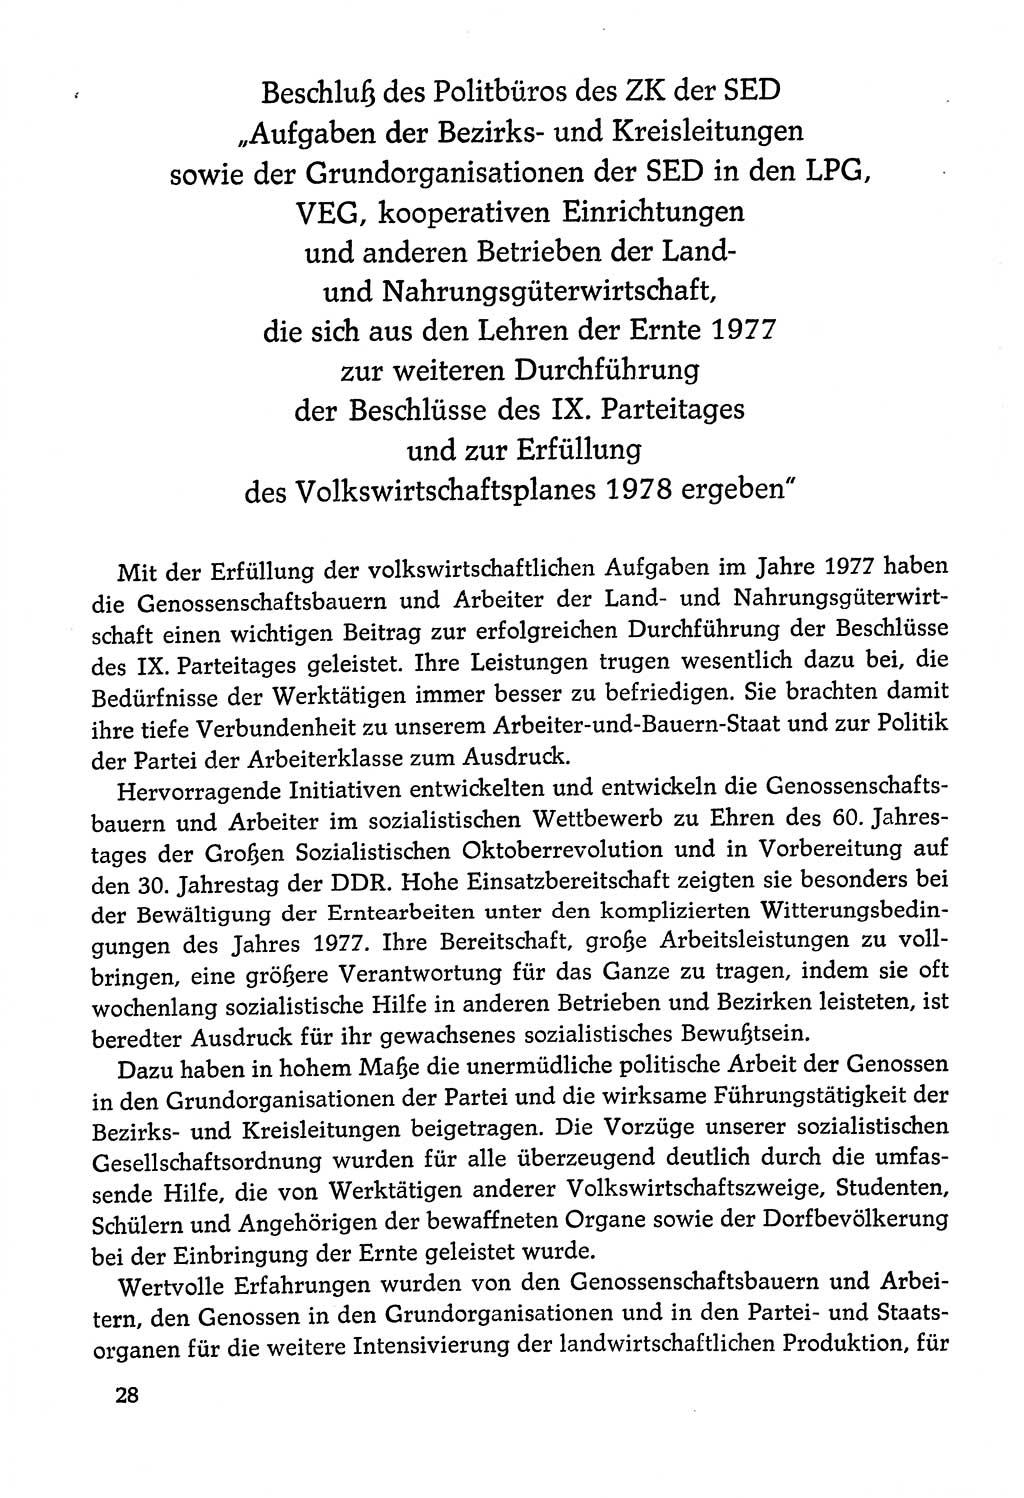 Dokumente der Sozialistischen Einheitspartei Deutschlands (SED) [Deutsche Demokratische Republik (DDR)] 1978-1979, Seite 28 (Dok. SED DDR 1978-1979, S. 28)